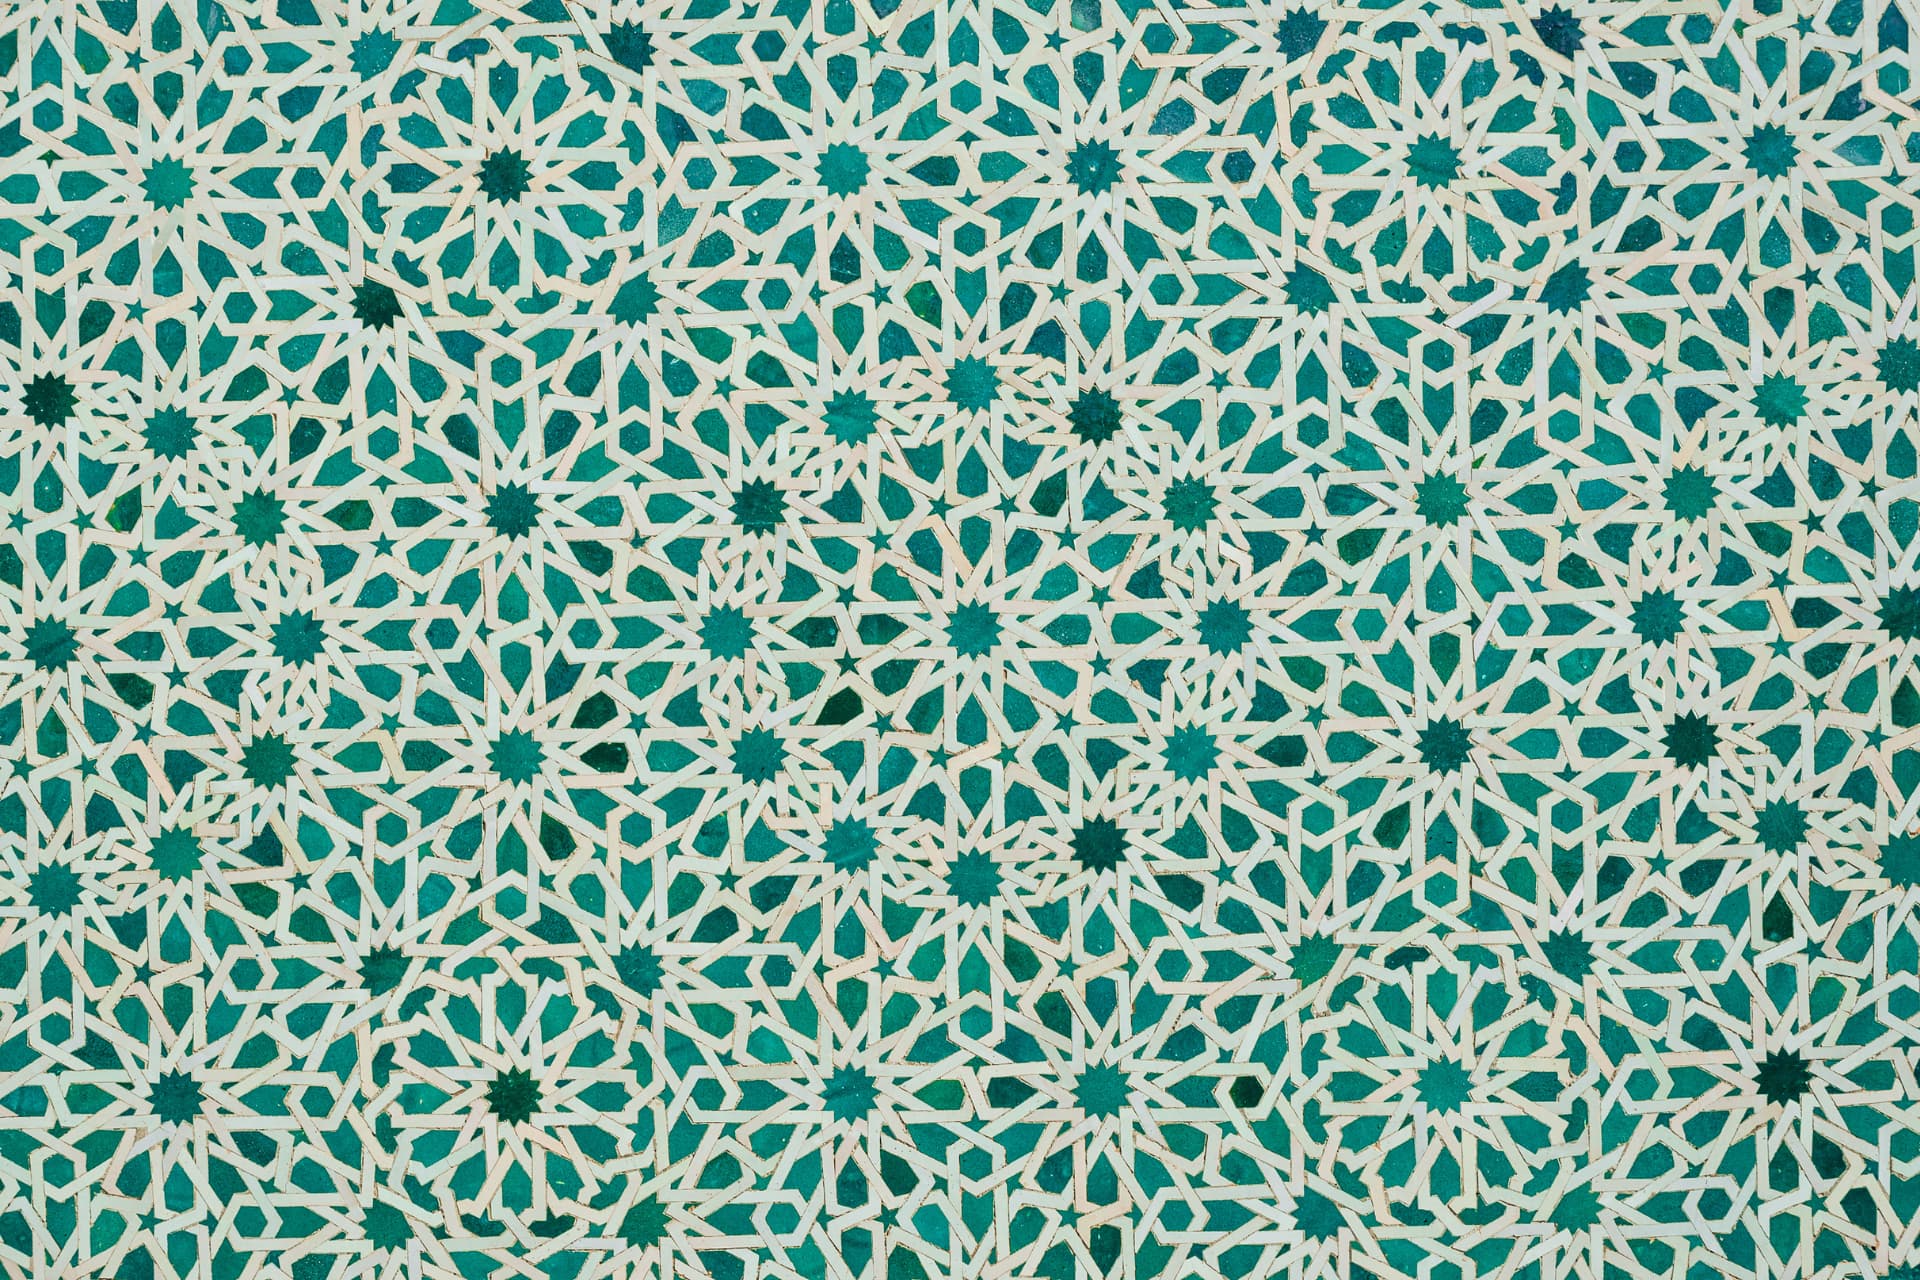 Moroccan zilij